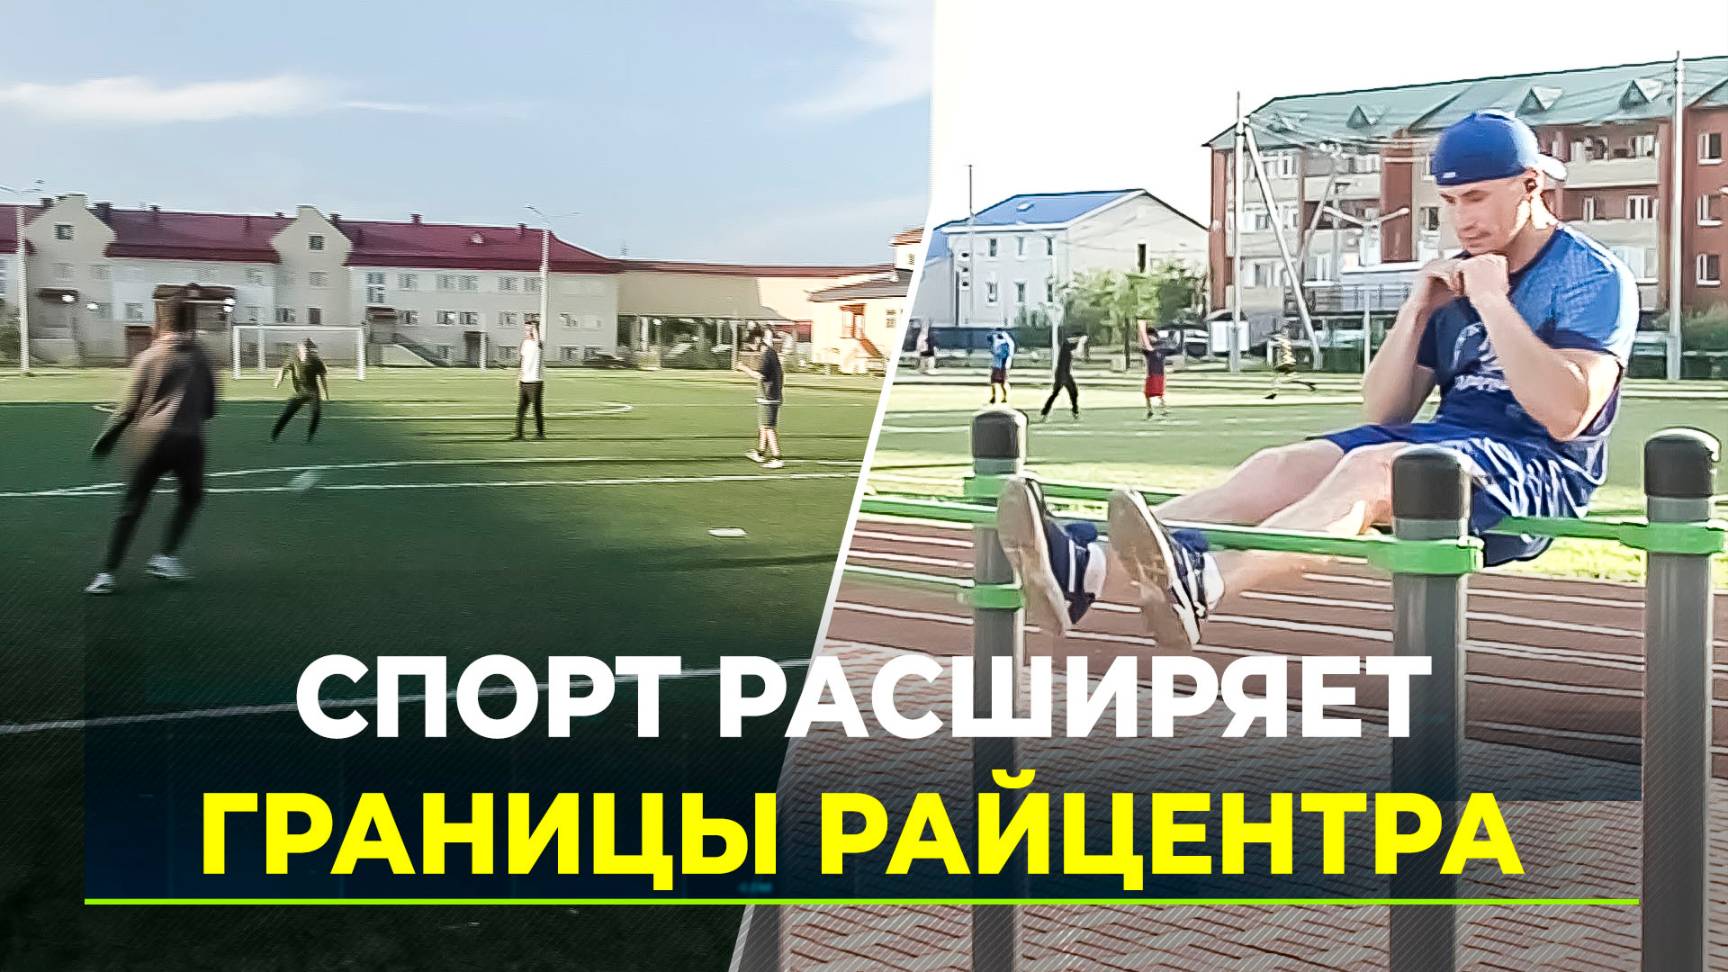 В Шурышкарском районе открылась многофункциональная спорт площадка